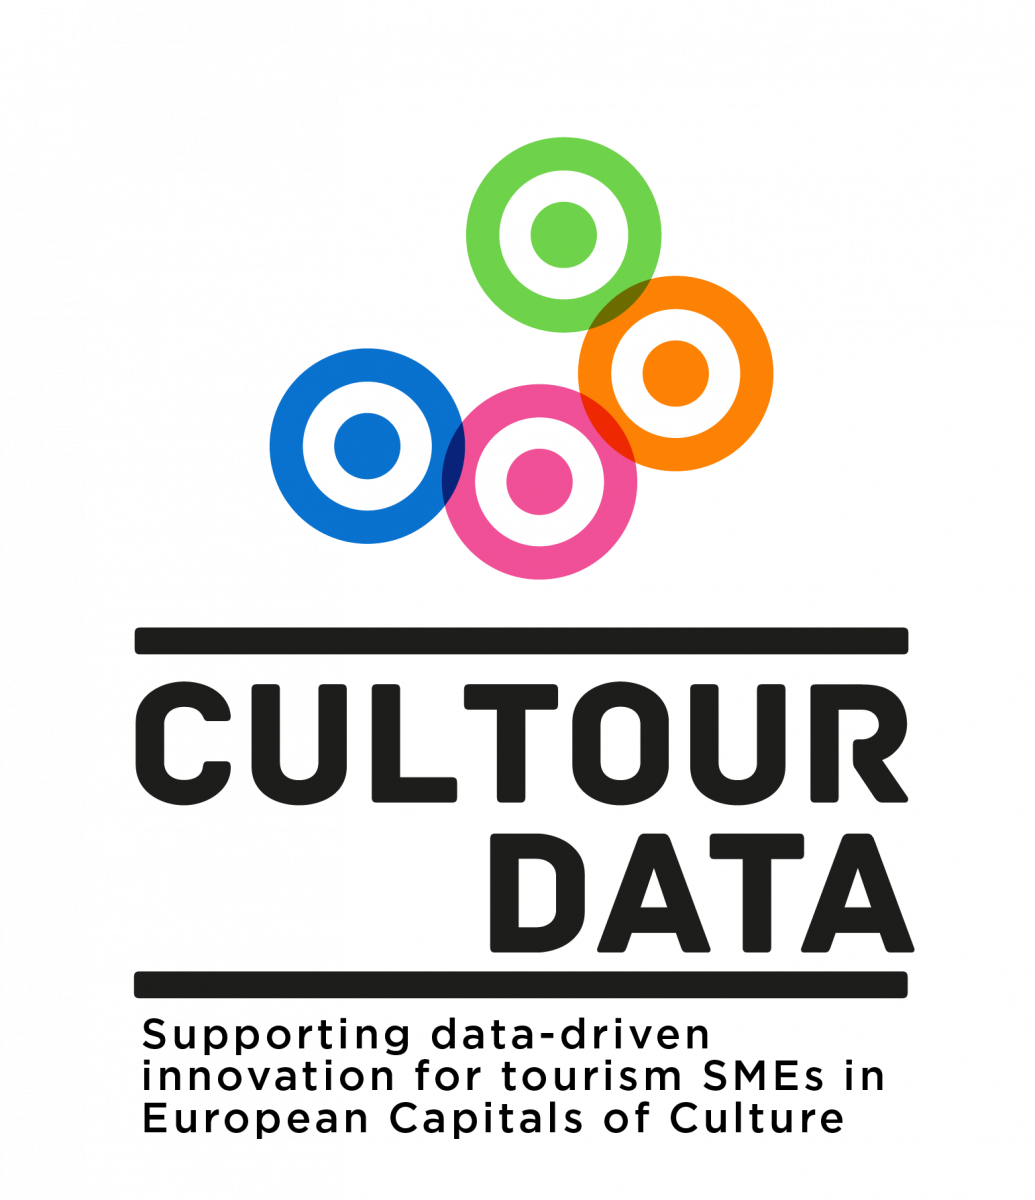 CulTourData logo